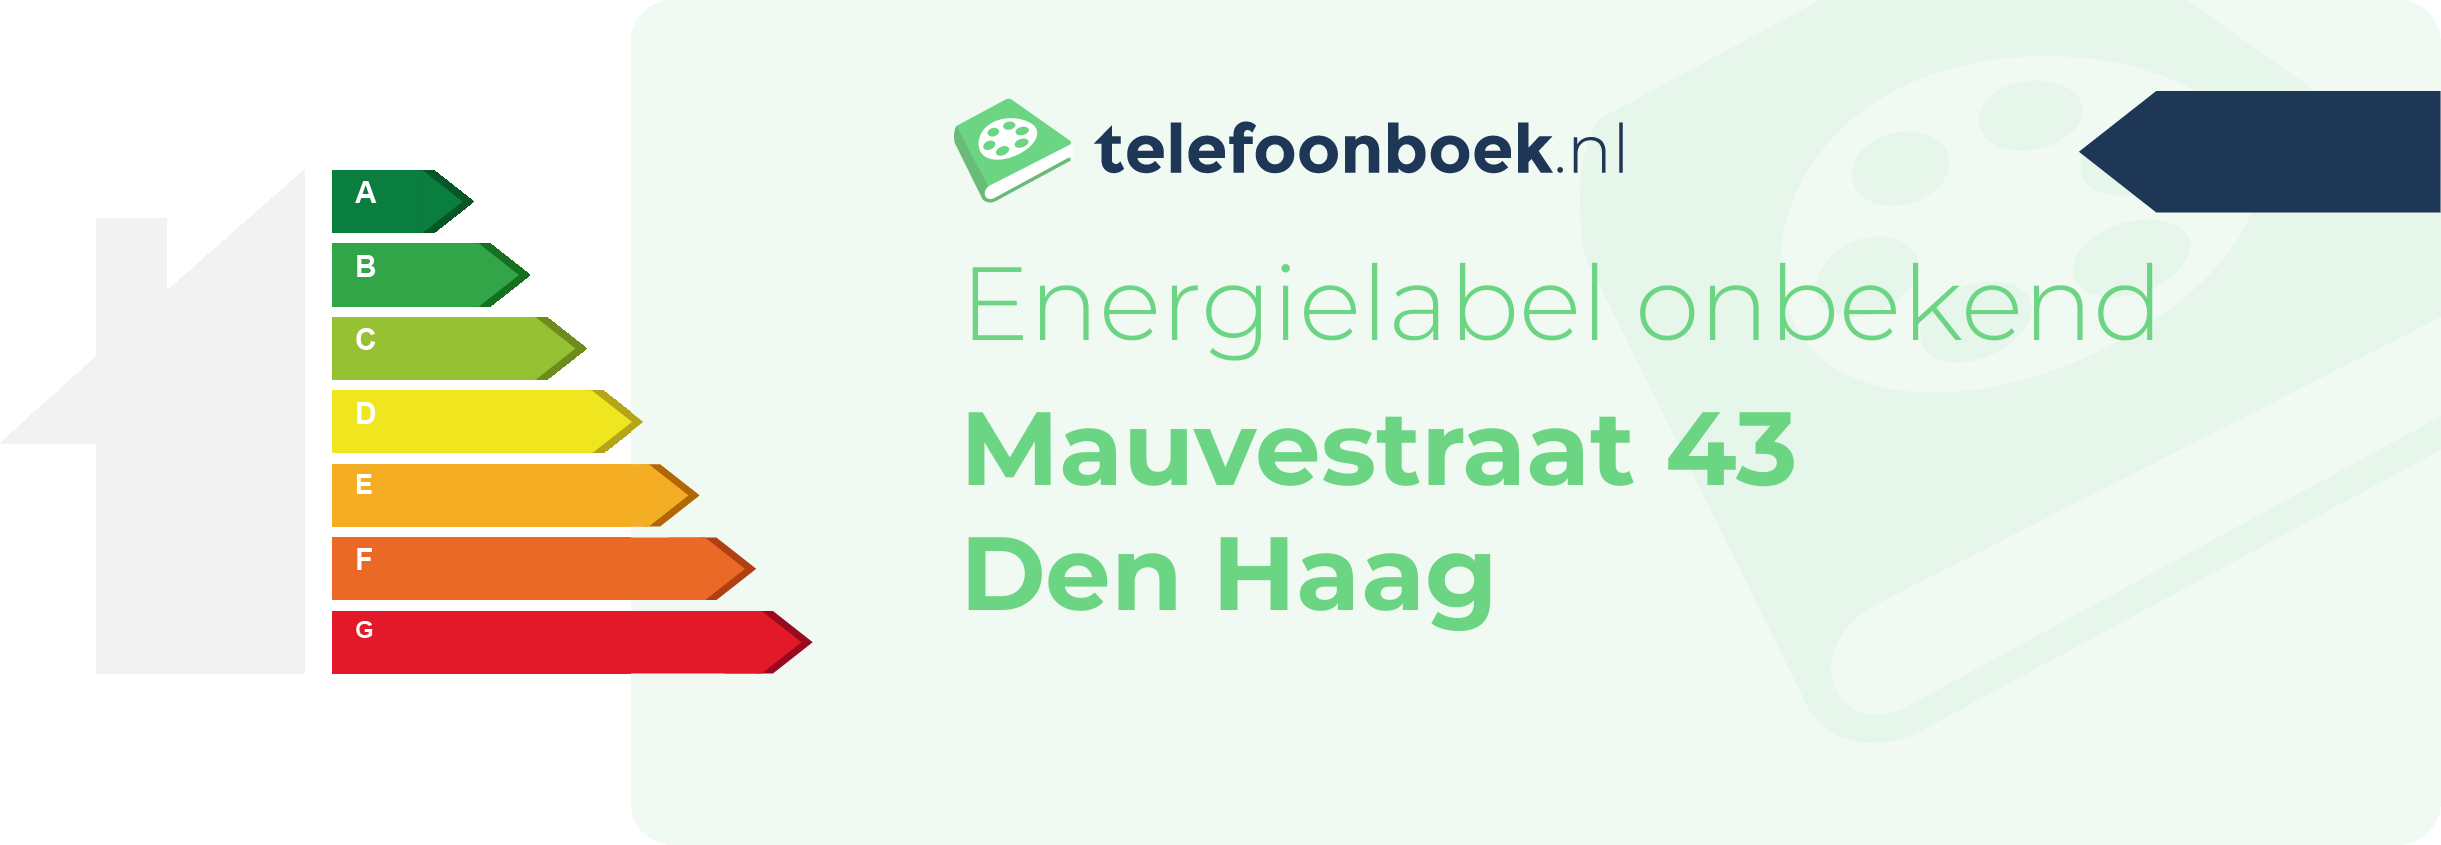 Energielabel Mauvestraat 43 Den Haag